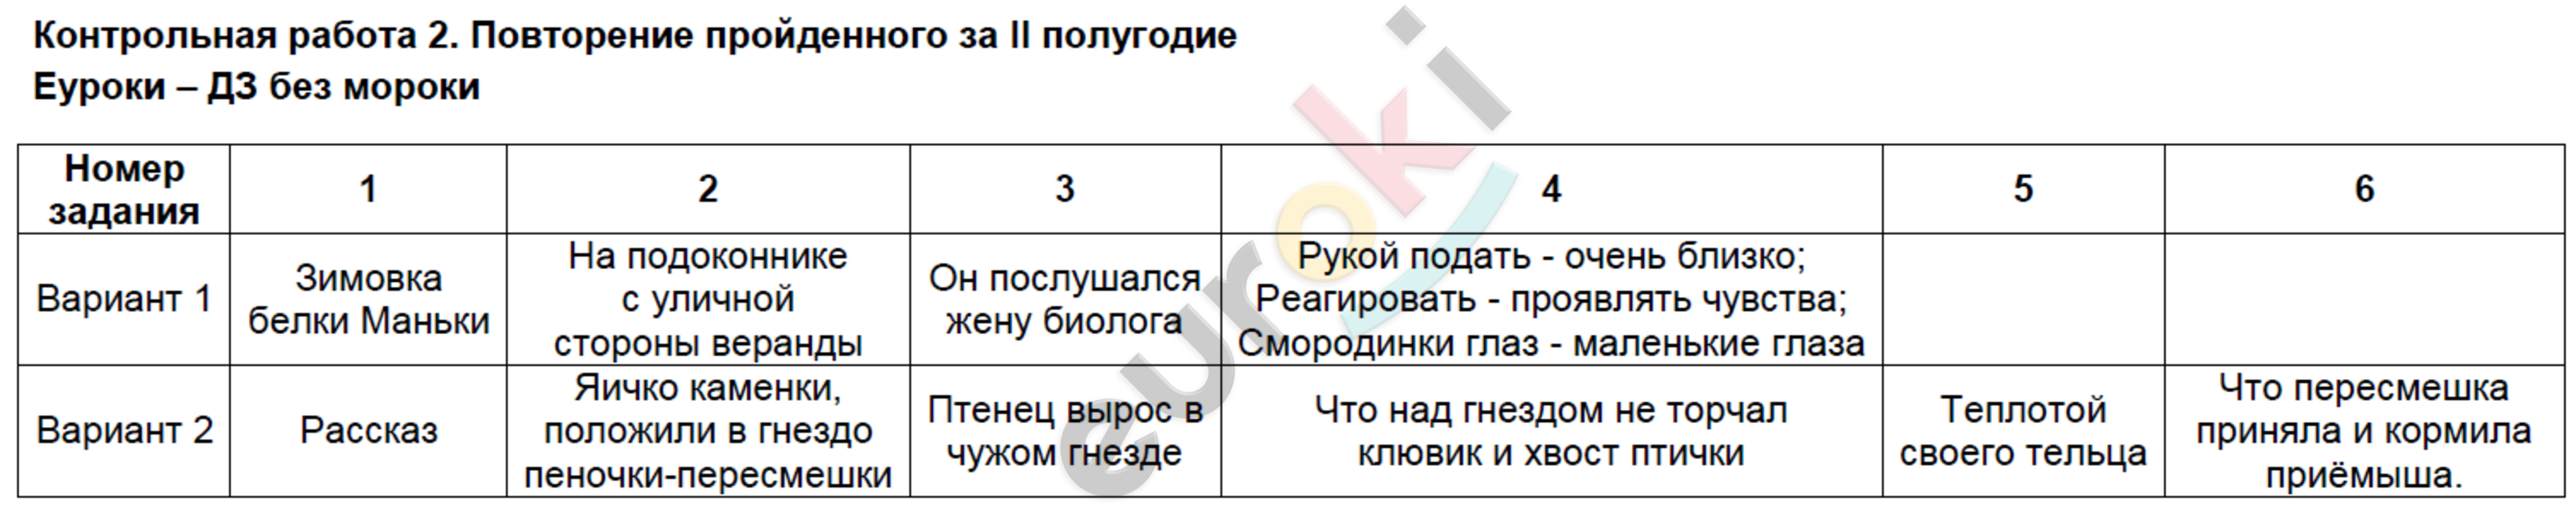 Контрольно-измерительные материалы (КИМ) по литературному чтению 4 класс Кутявина Задание 2